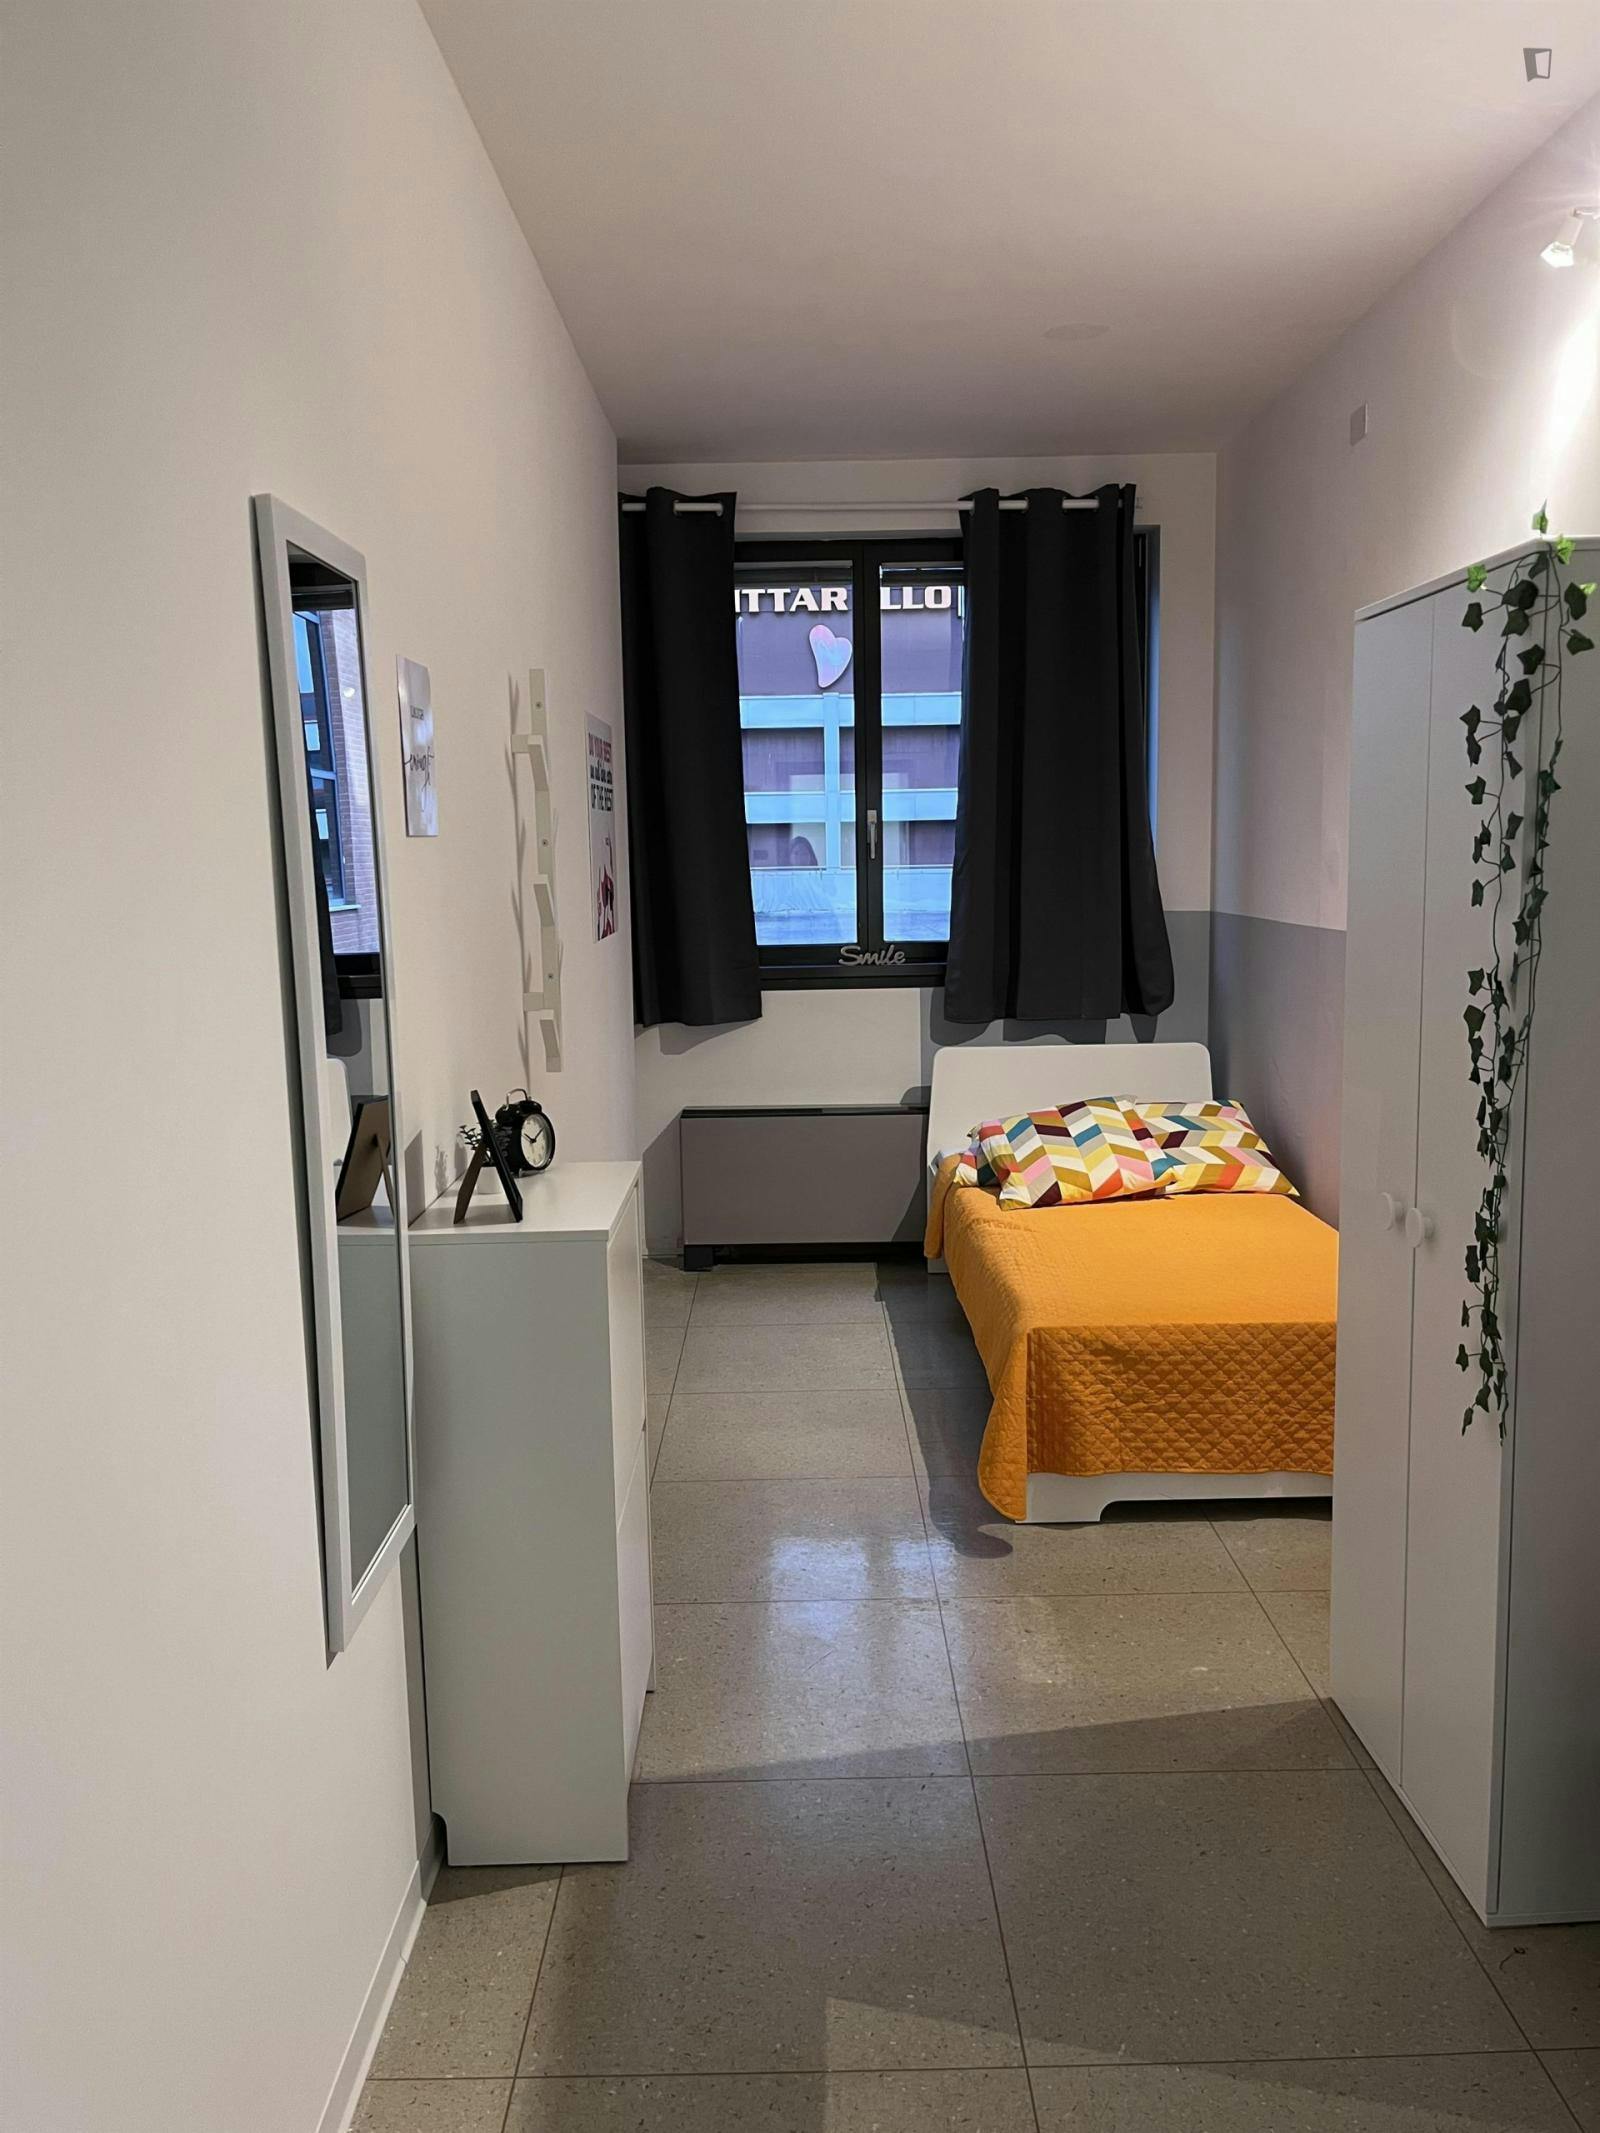 Homely single bedroom near Trento Main Train Station